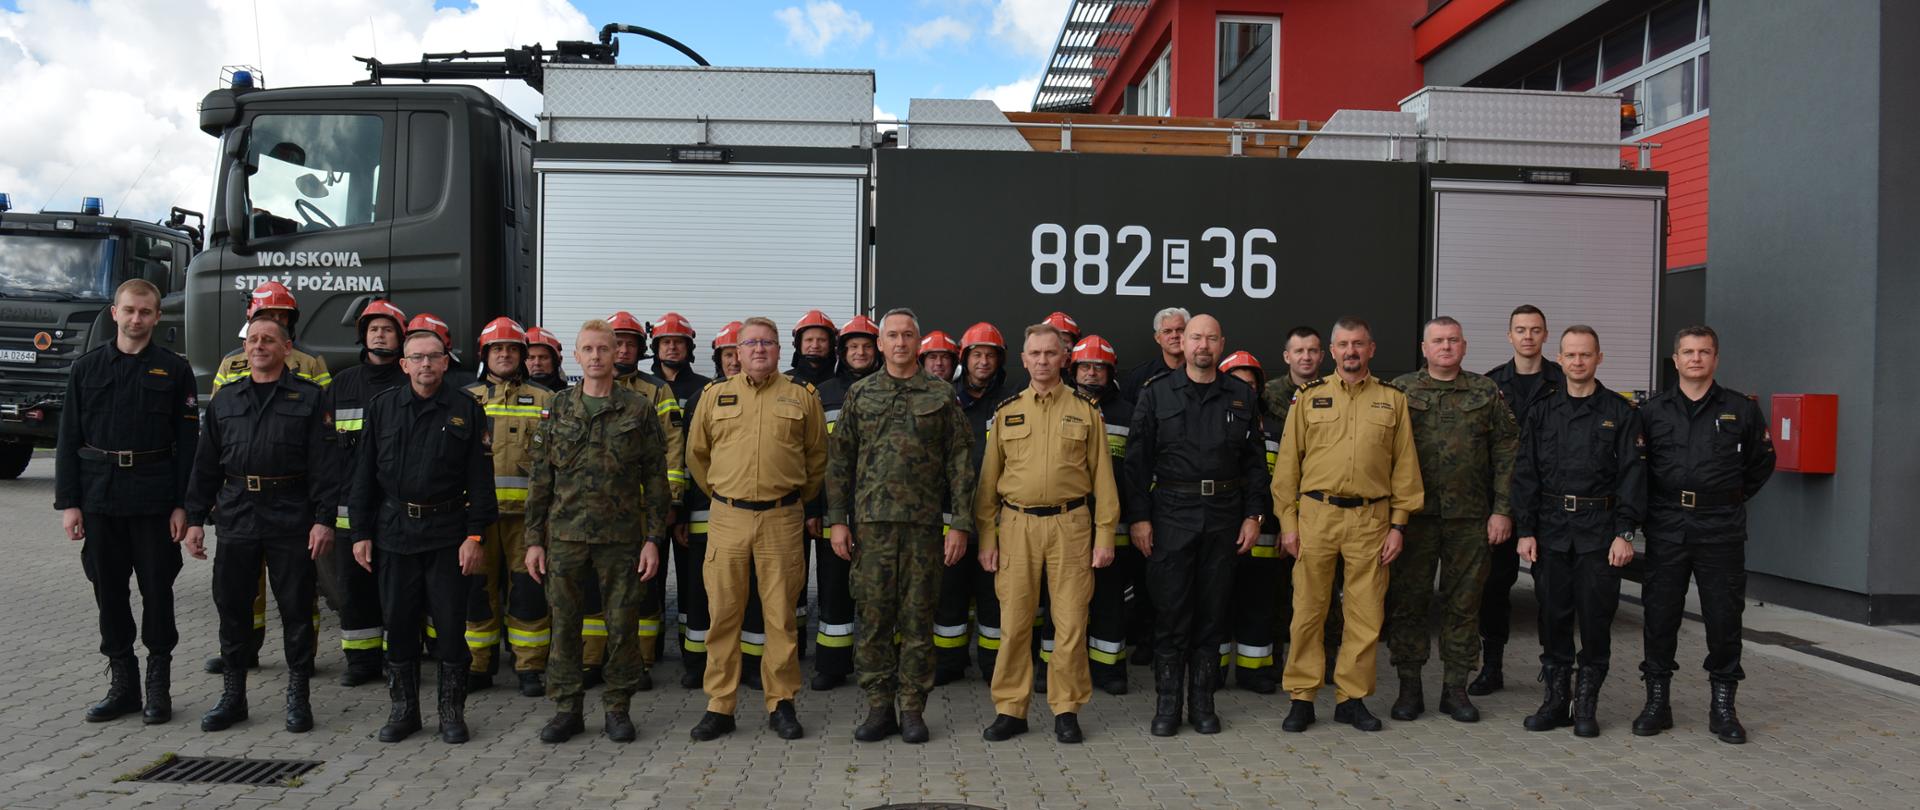 Zdjęcie przedstawia przedstawicieli Państwowej Straży Pożarnej, Wojskowej Straży Pożarnej oraz przedstawicieli Delegatury Wojskowej Ochrony Przeciwpożarowej w Bydgoszczy na tle wojskowego samochodu ratowniczo-gaśniczego. 